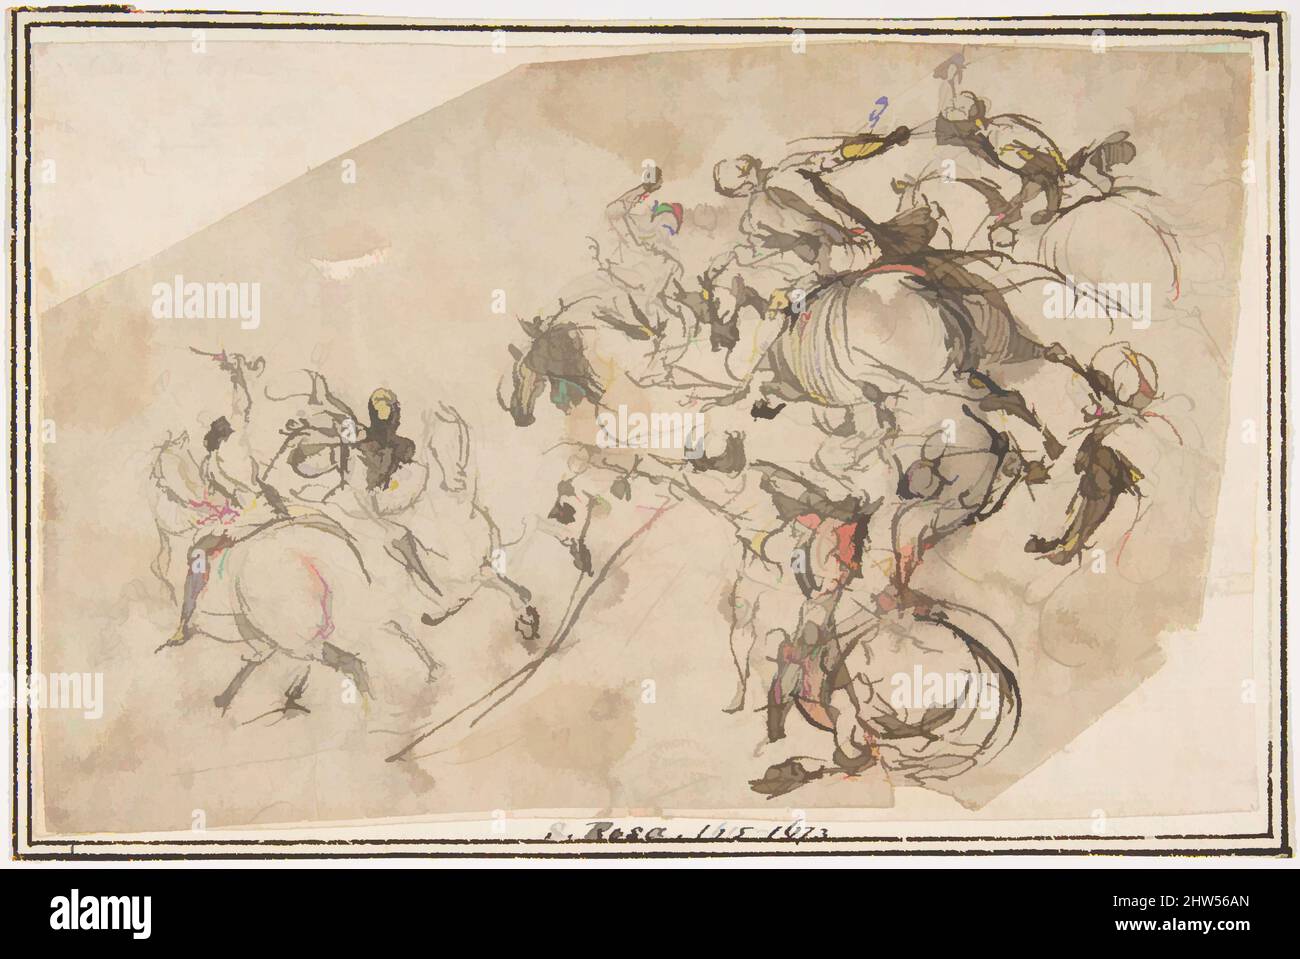 Art inspiré par Cavalry charge, 1624–63, encre stylo et brune, brosse et lavage brun, 4-3/4 x 7-1/4 po. (12,1 x 18,4 cm), dessins, attribué à Francesco Allegrini (Italien, Cantiano (?) 1615/20–après 1679 Gubbio, oeuvres classiques modernisées par Artotop avec une touche de modernité. Formes, couleur et valeur, impact visuel accrocheur sur l'art émotions par la liberté d'œuvres d'art d'une manière contemporaine. Un message intemporel qui cherche une nouvelle direction créative. Artistes qui se tournent vers le support numérique et créent le NFT Artotop Banque D'Images